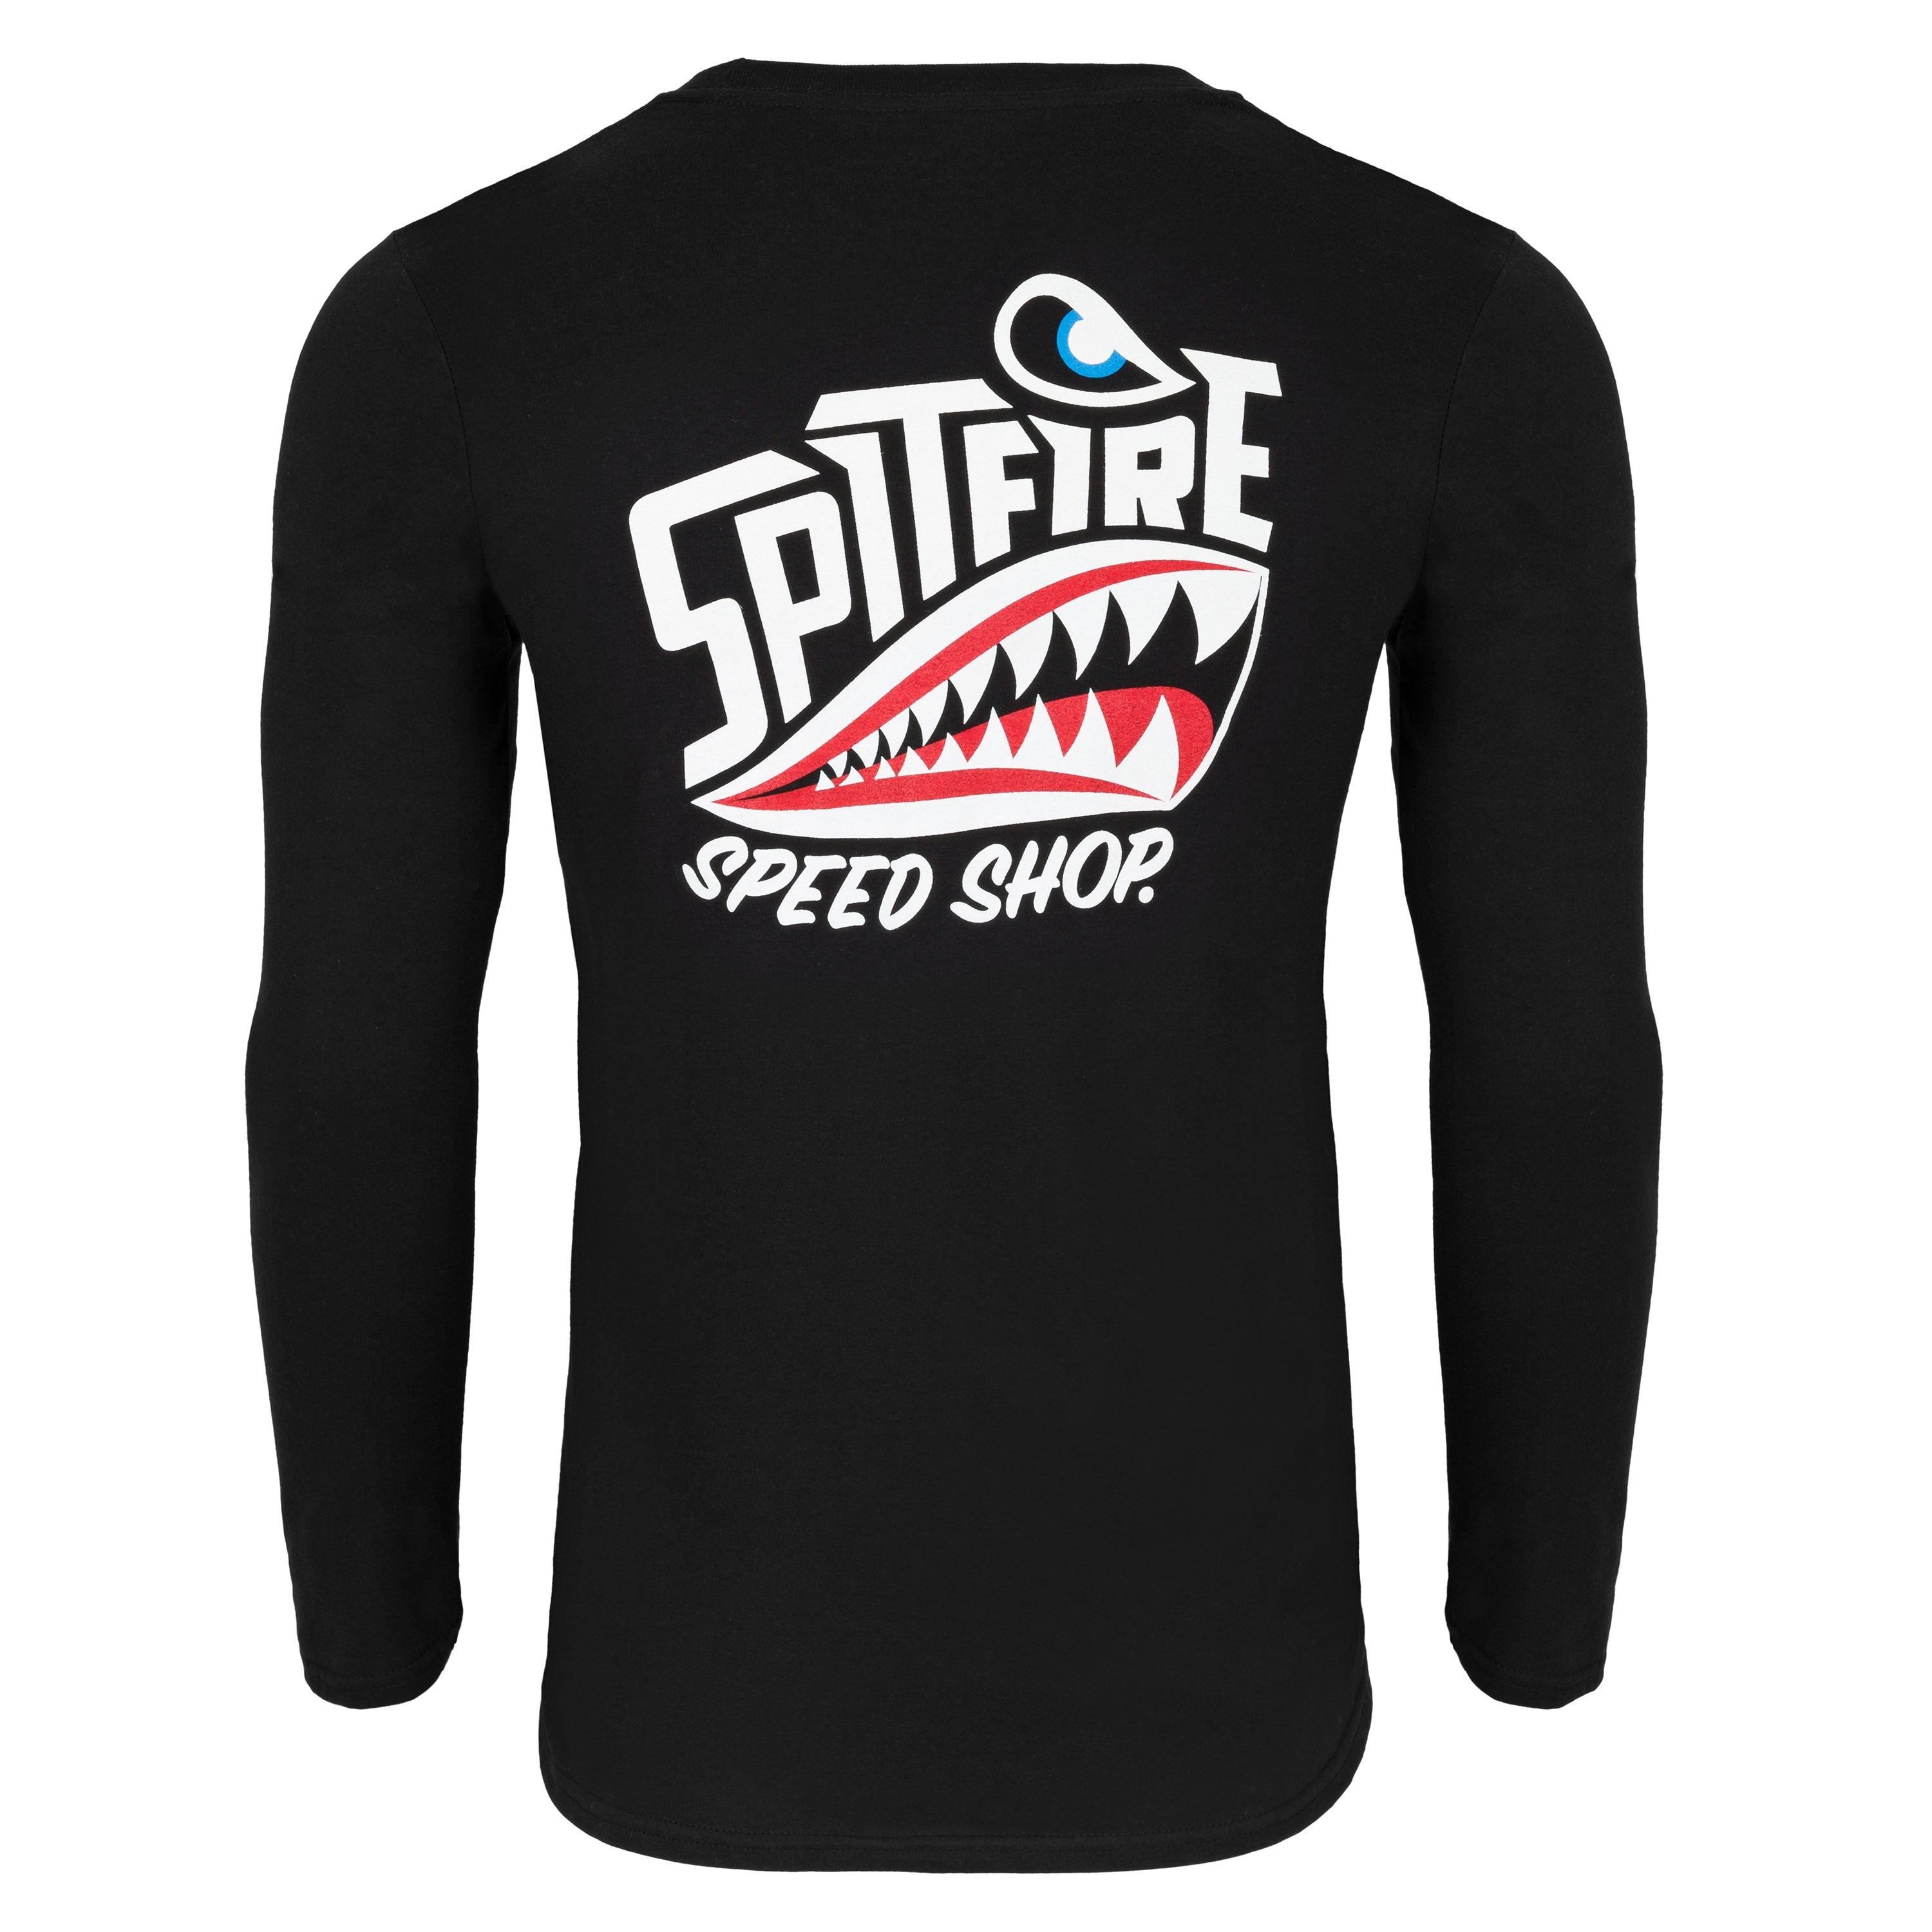 spitfire speed shop longsleeve skater T-Shirt